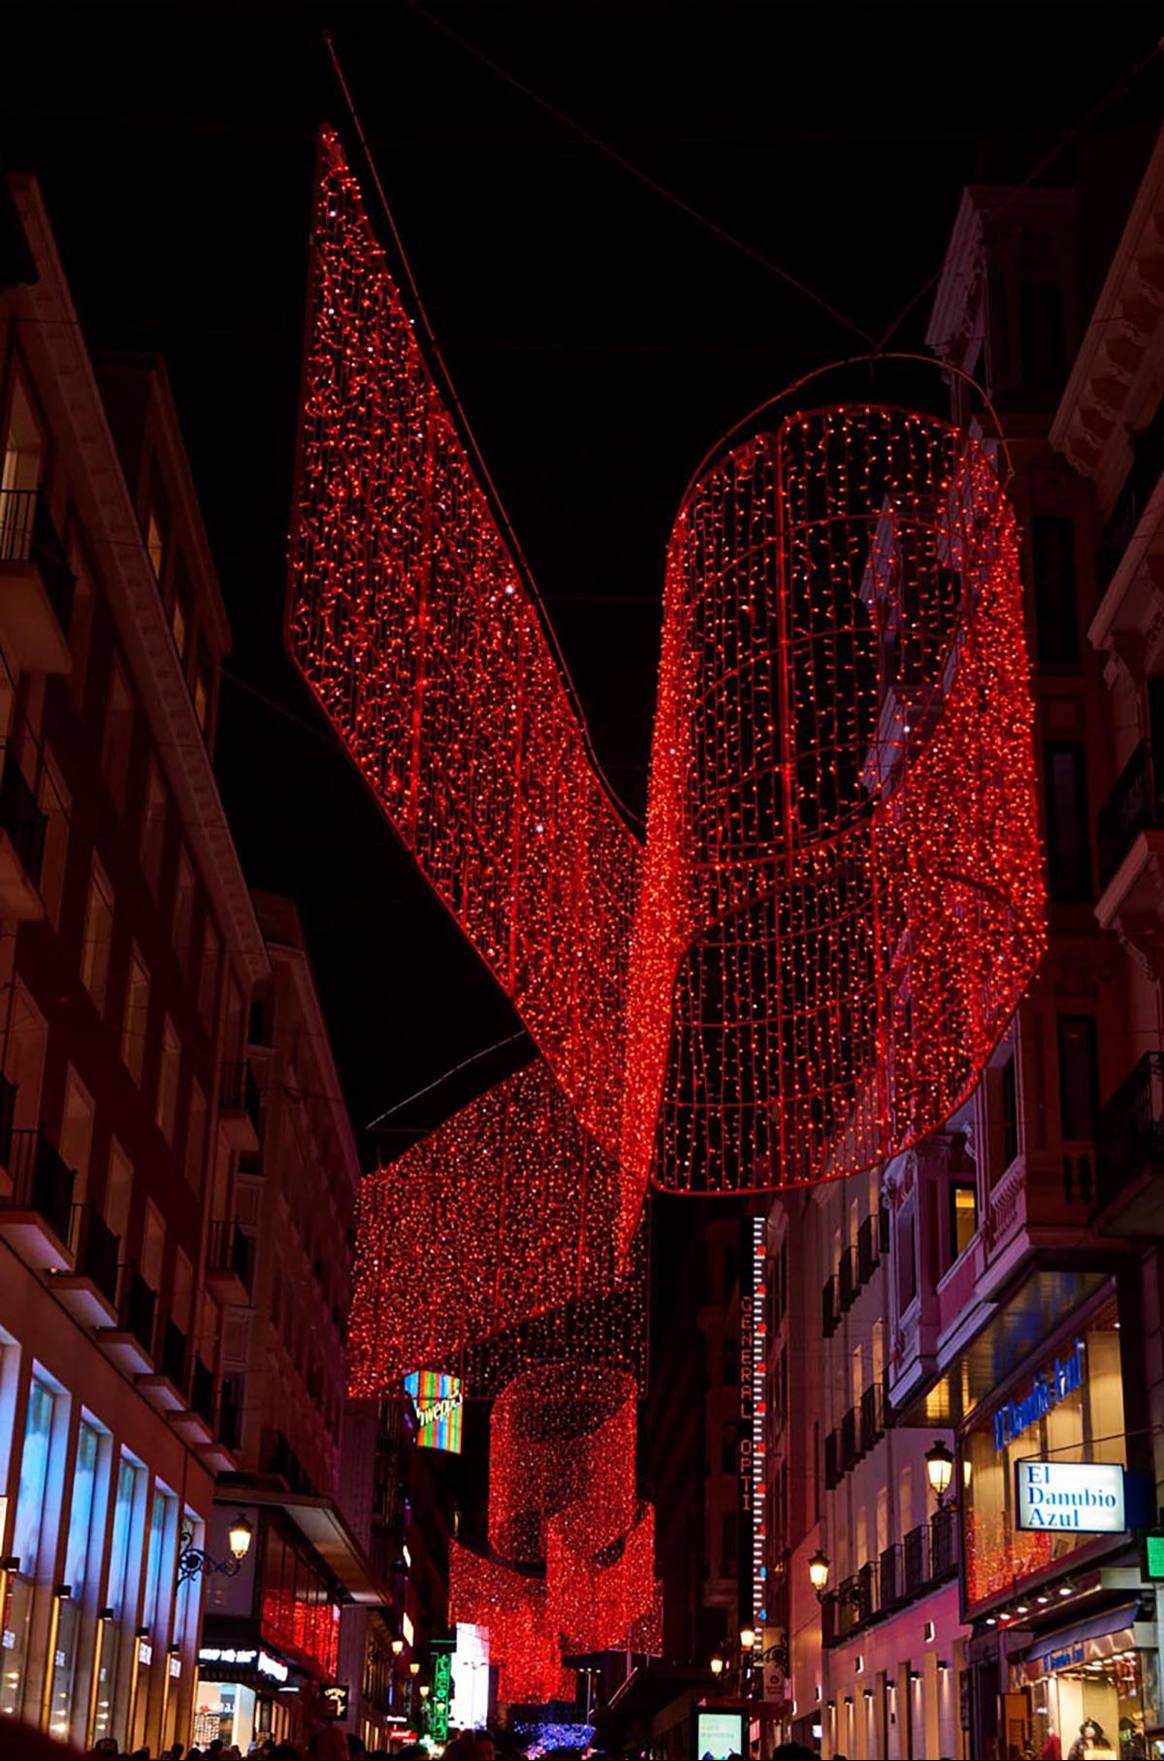 Photo Credits: Iluminación navideña de Madrid creada por Juan Vidal en el marco de la colaboración establecida con Acme. Fotografía de cortesía.